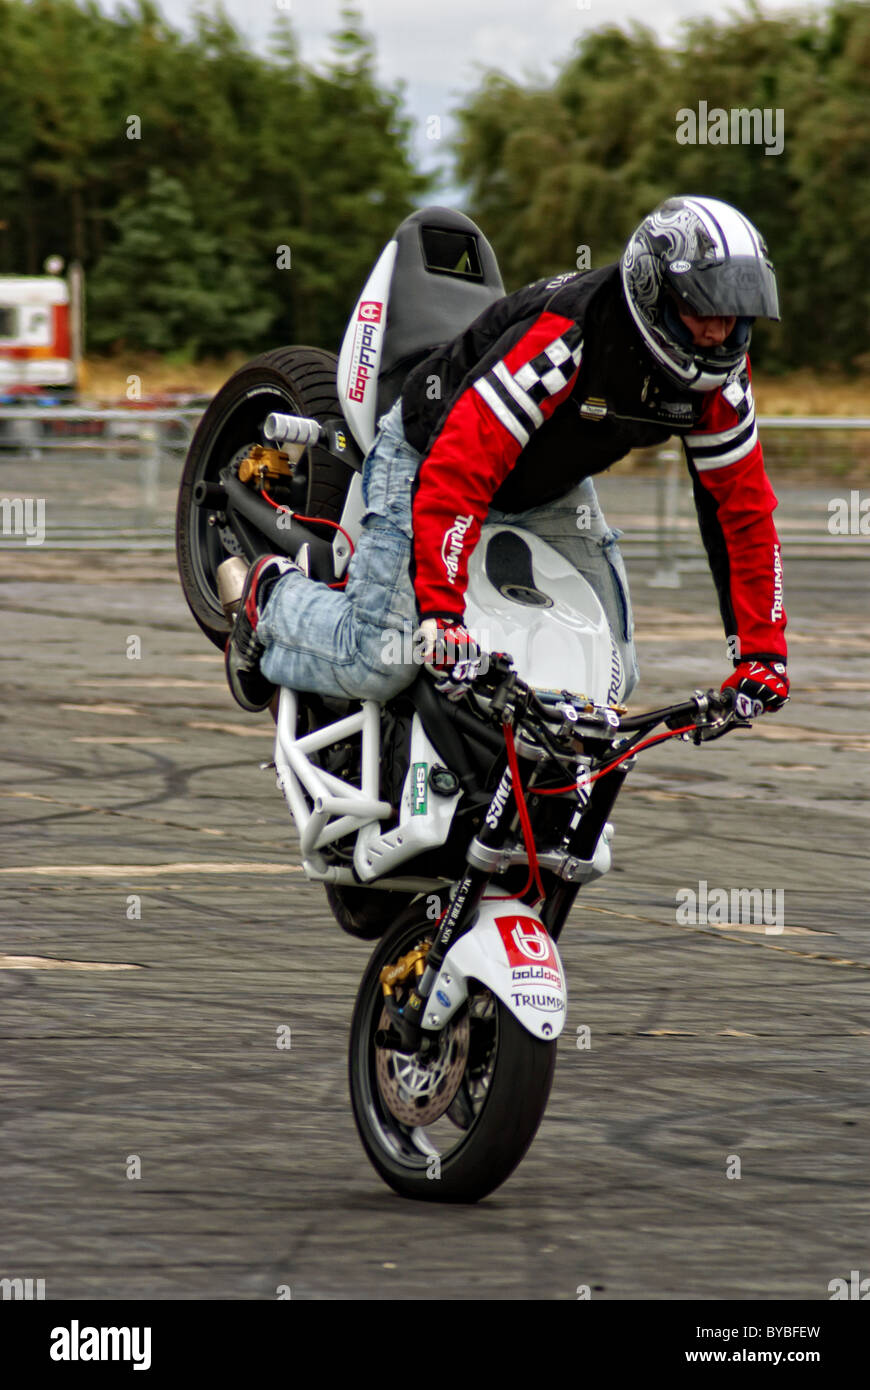 Stunt Motor bike Stock Photo - Alamy